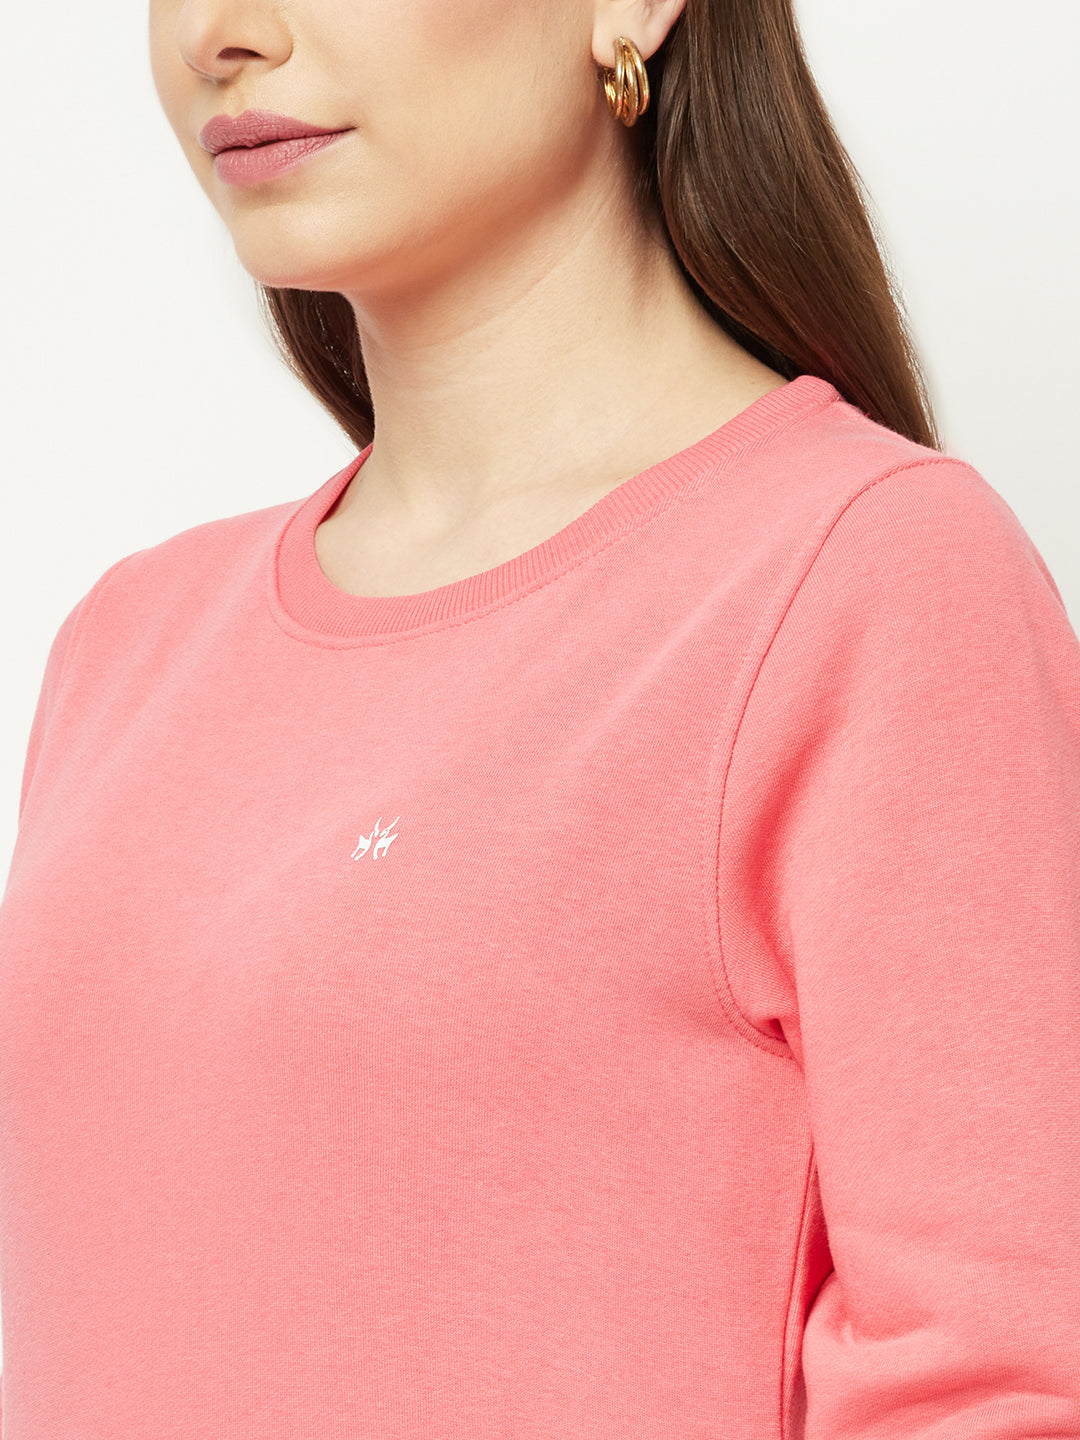  Coral Pink Typographic Sweatshirt 